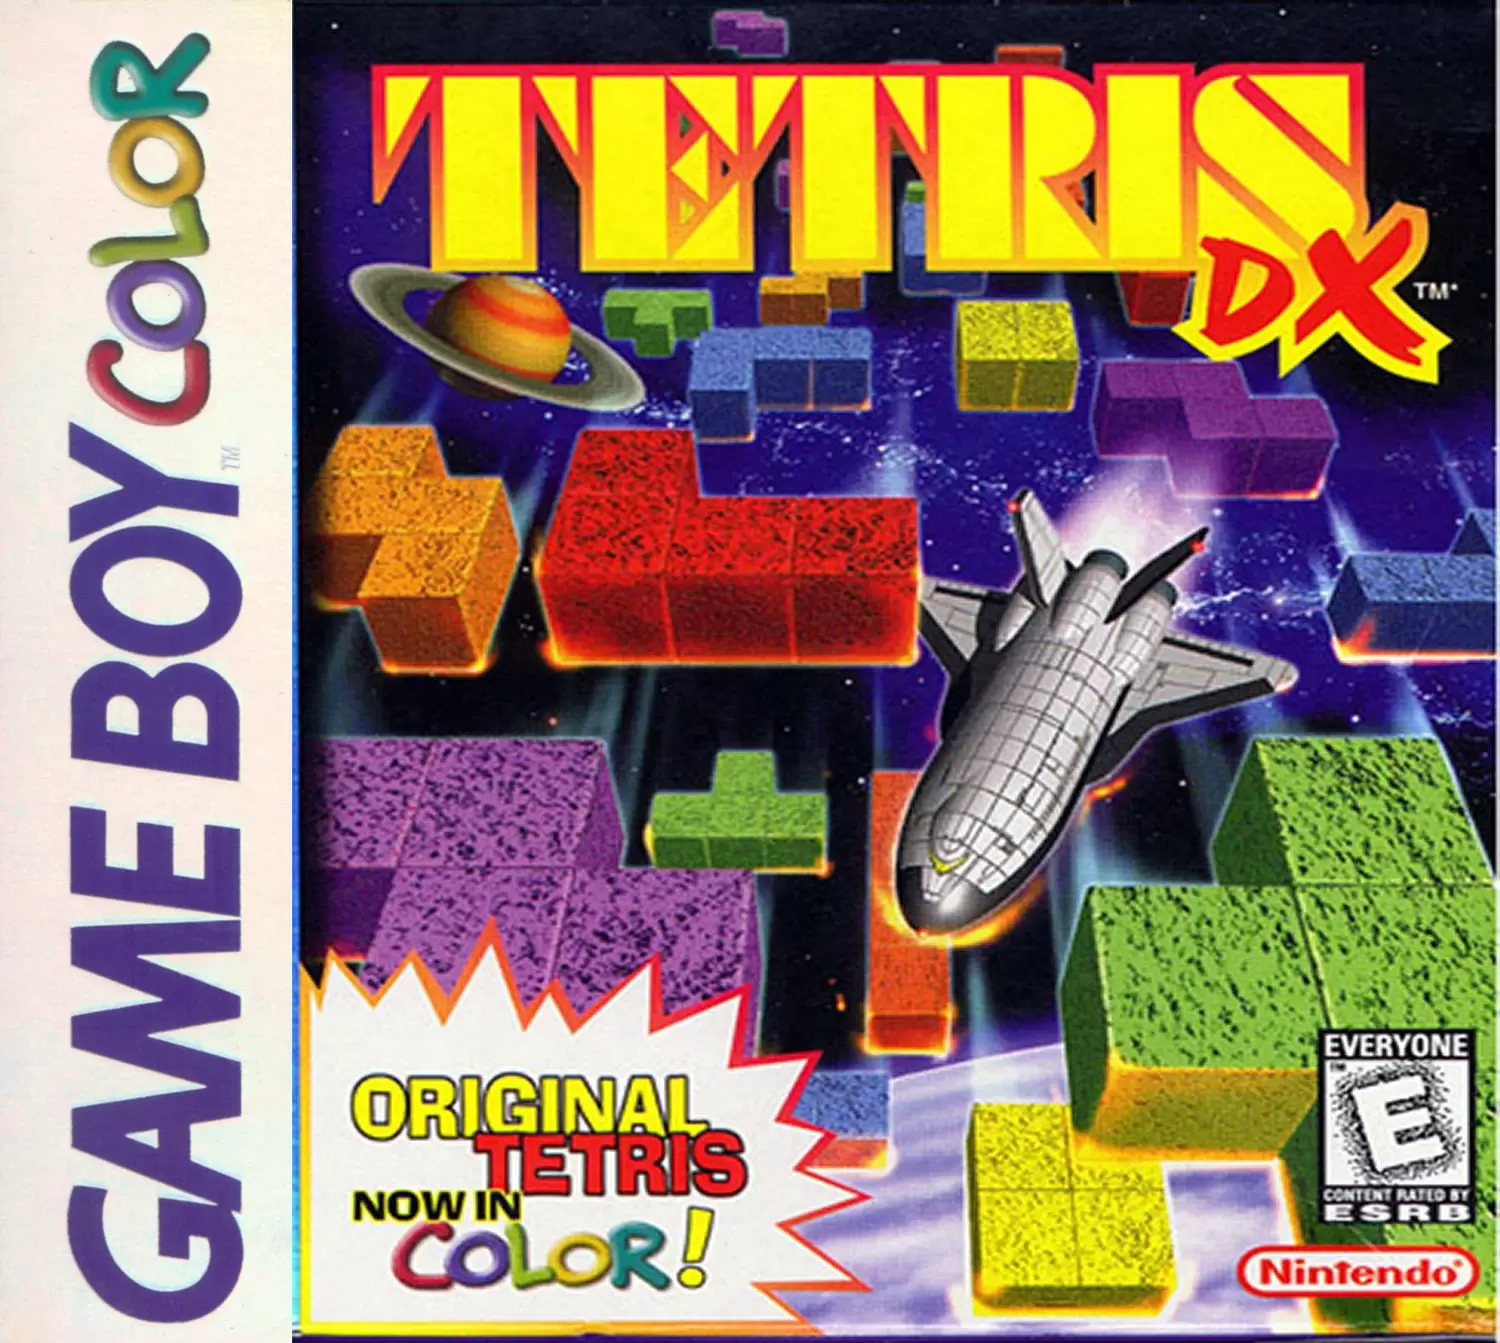 Game Boy Color Games - Tetris DX